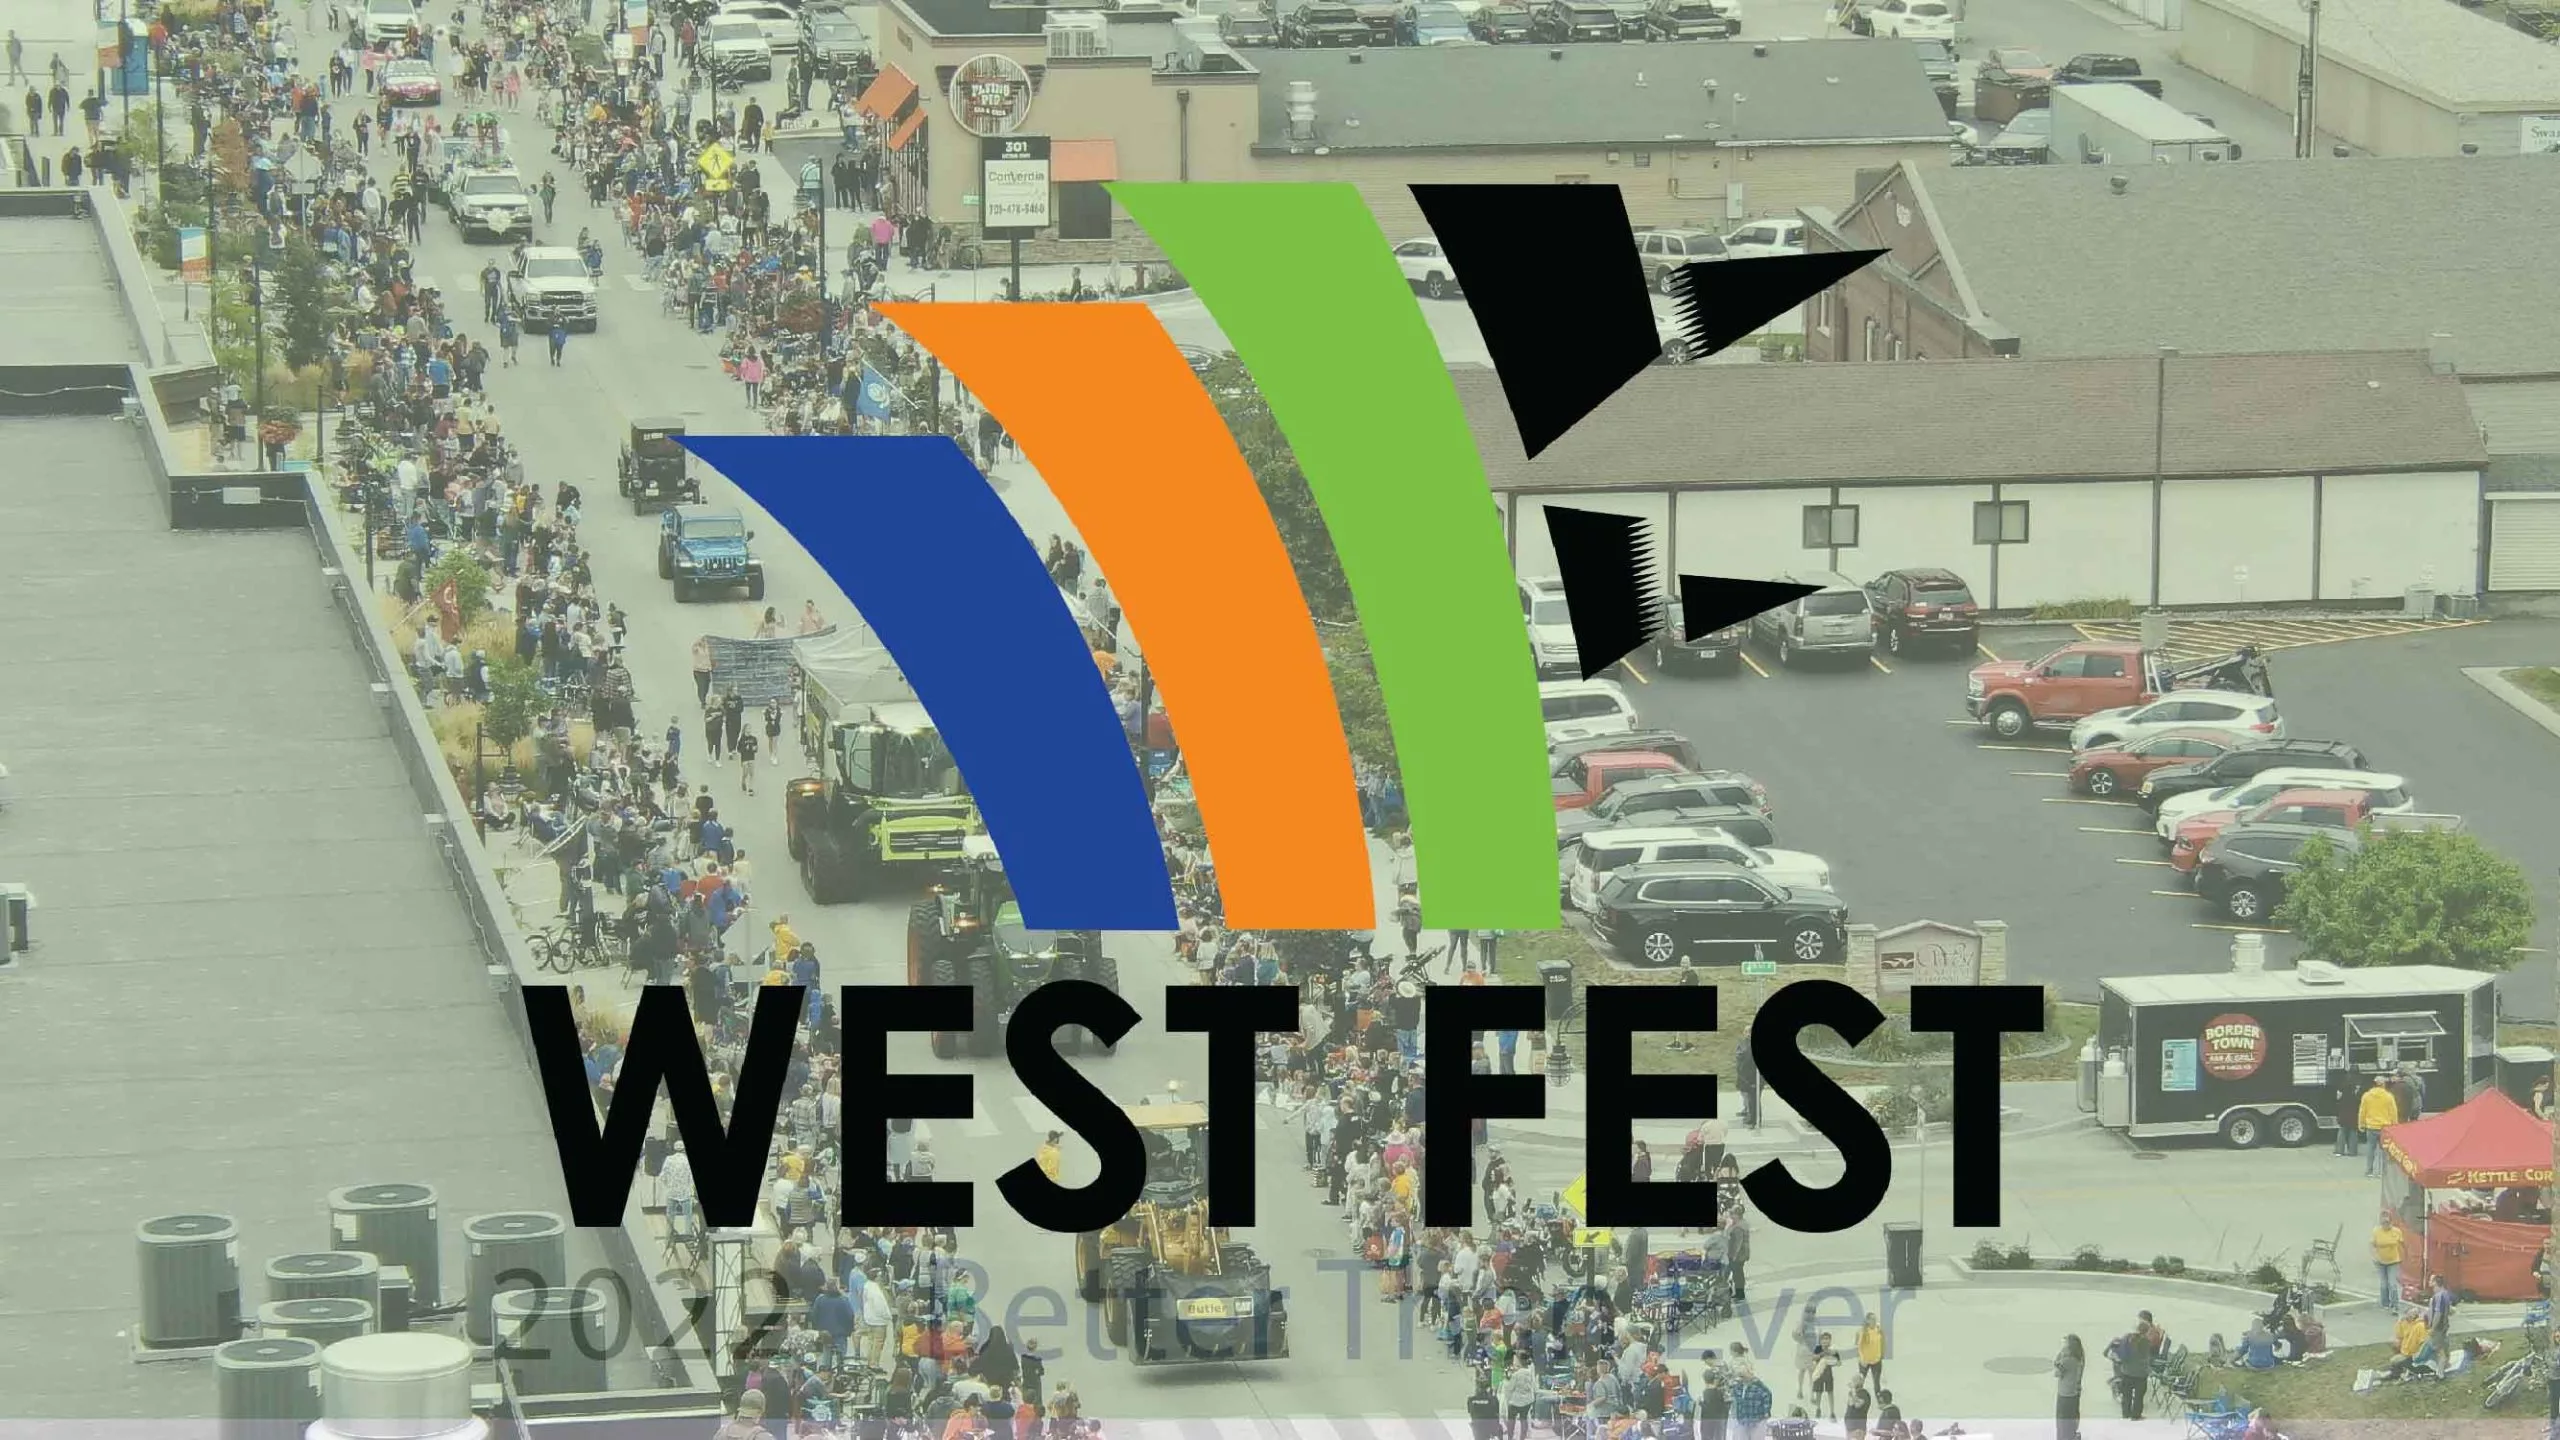 West Fest Parade Fargo Underground